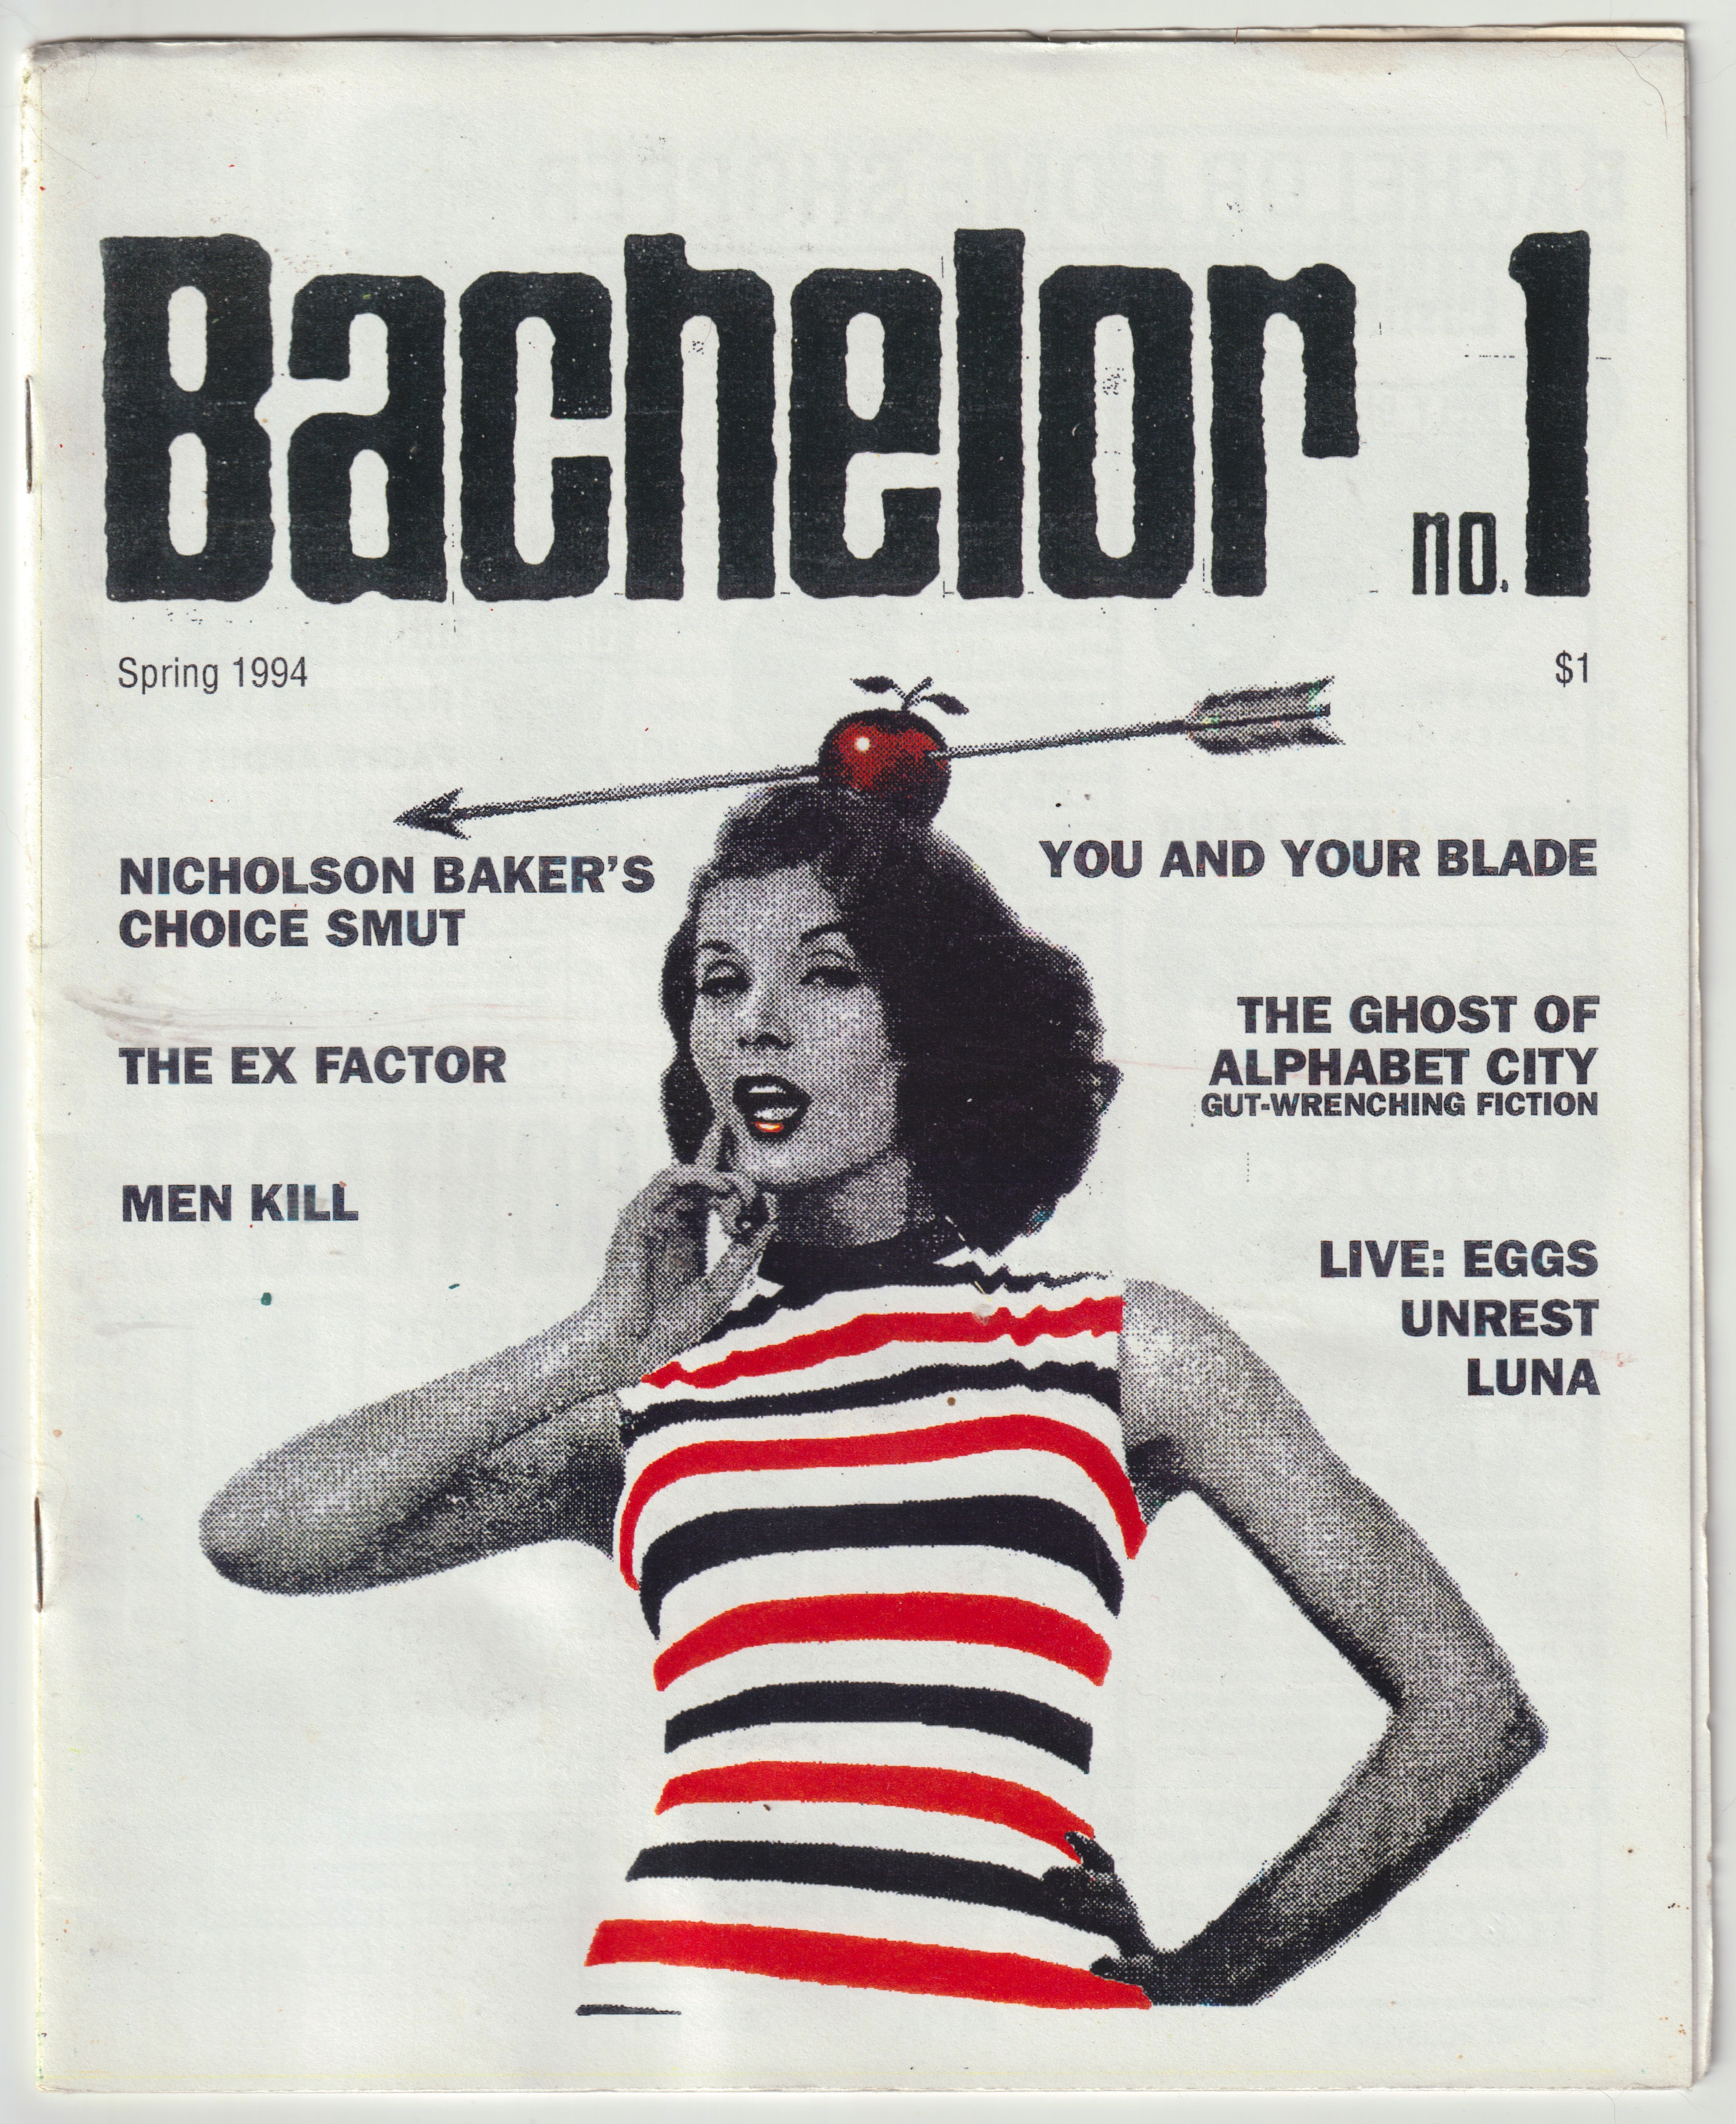 Bachelor No. 1 fanzine cover design.